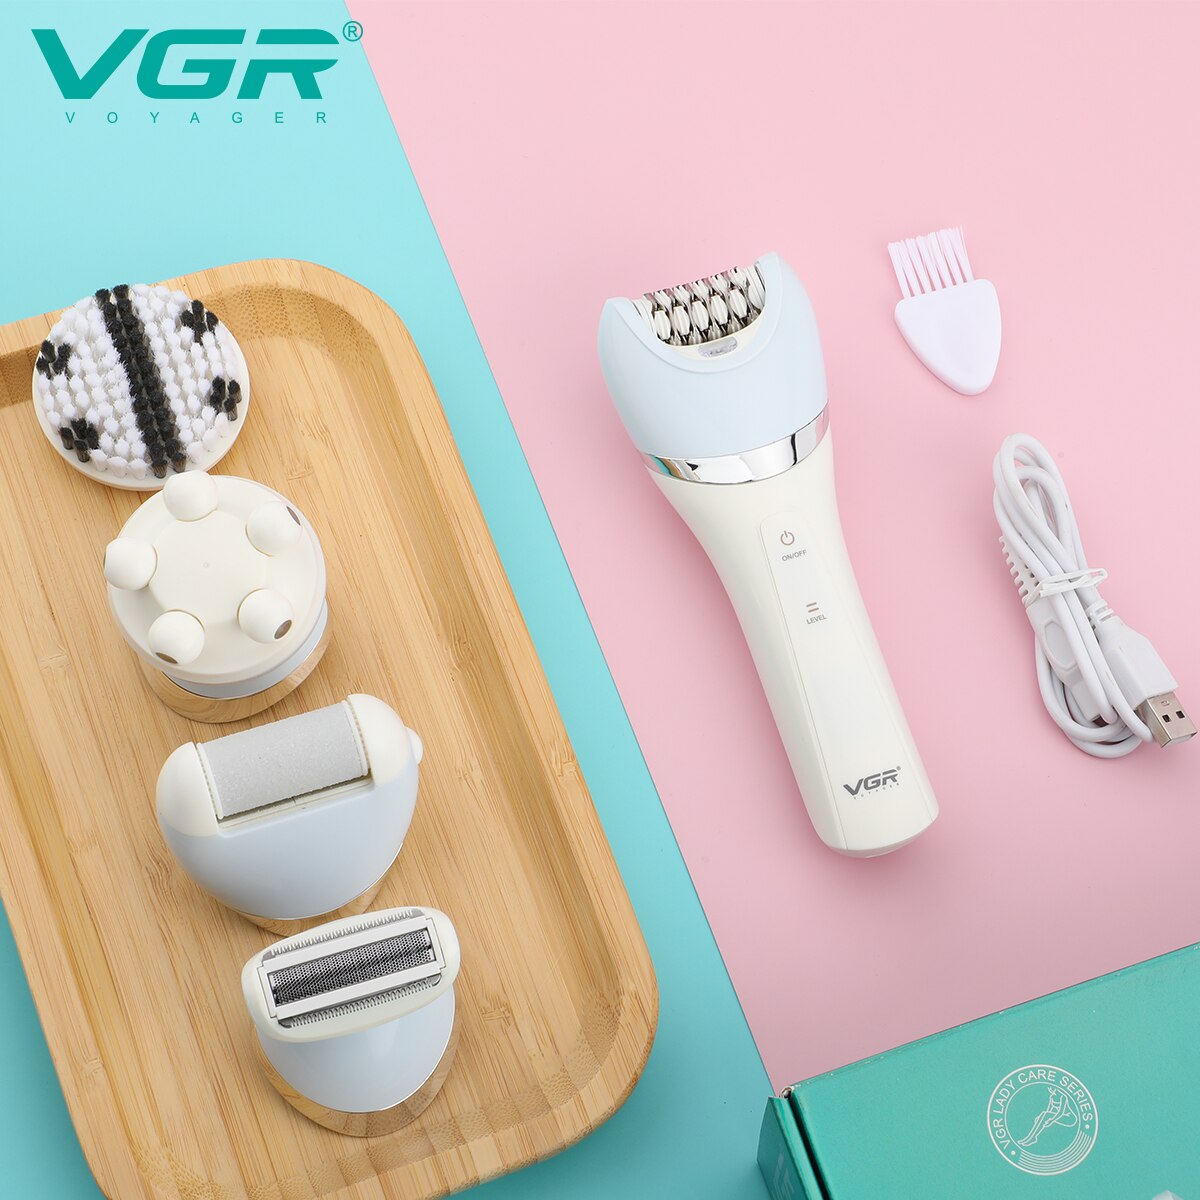 Máy Cạo Lông điện VGR V-703 Đa Năng tích hợp cạo lông, làm sạch da, massage mặt - Hàng nhập khẩu